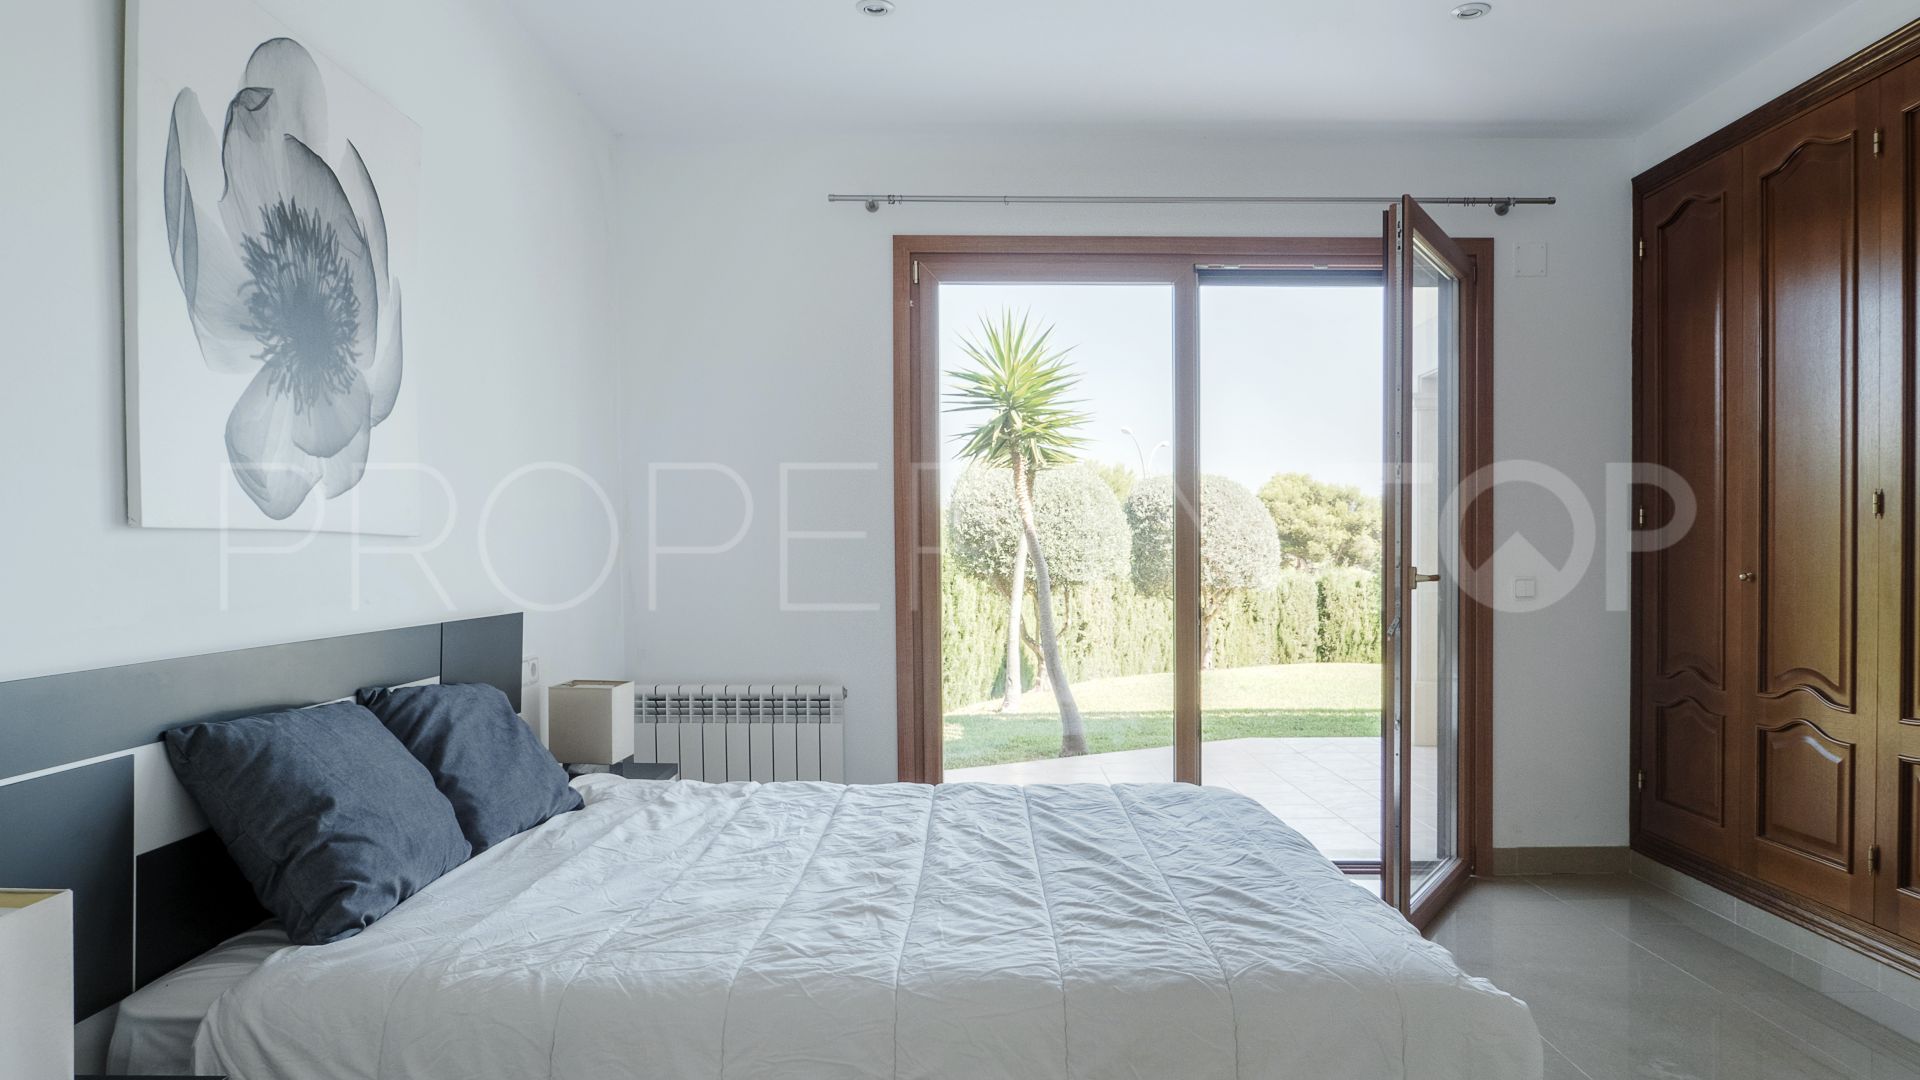 Comprar casa de 4 dormitorios en Santa Ponsa